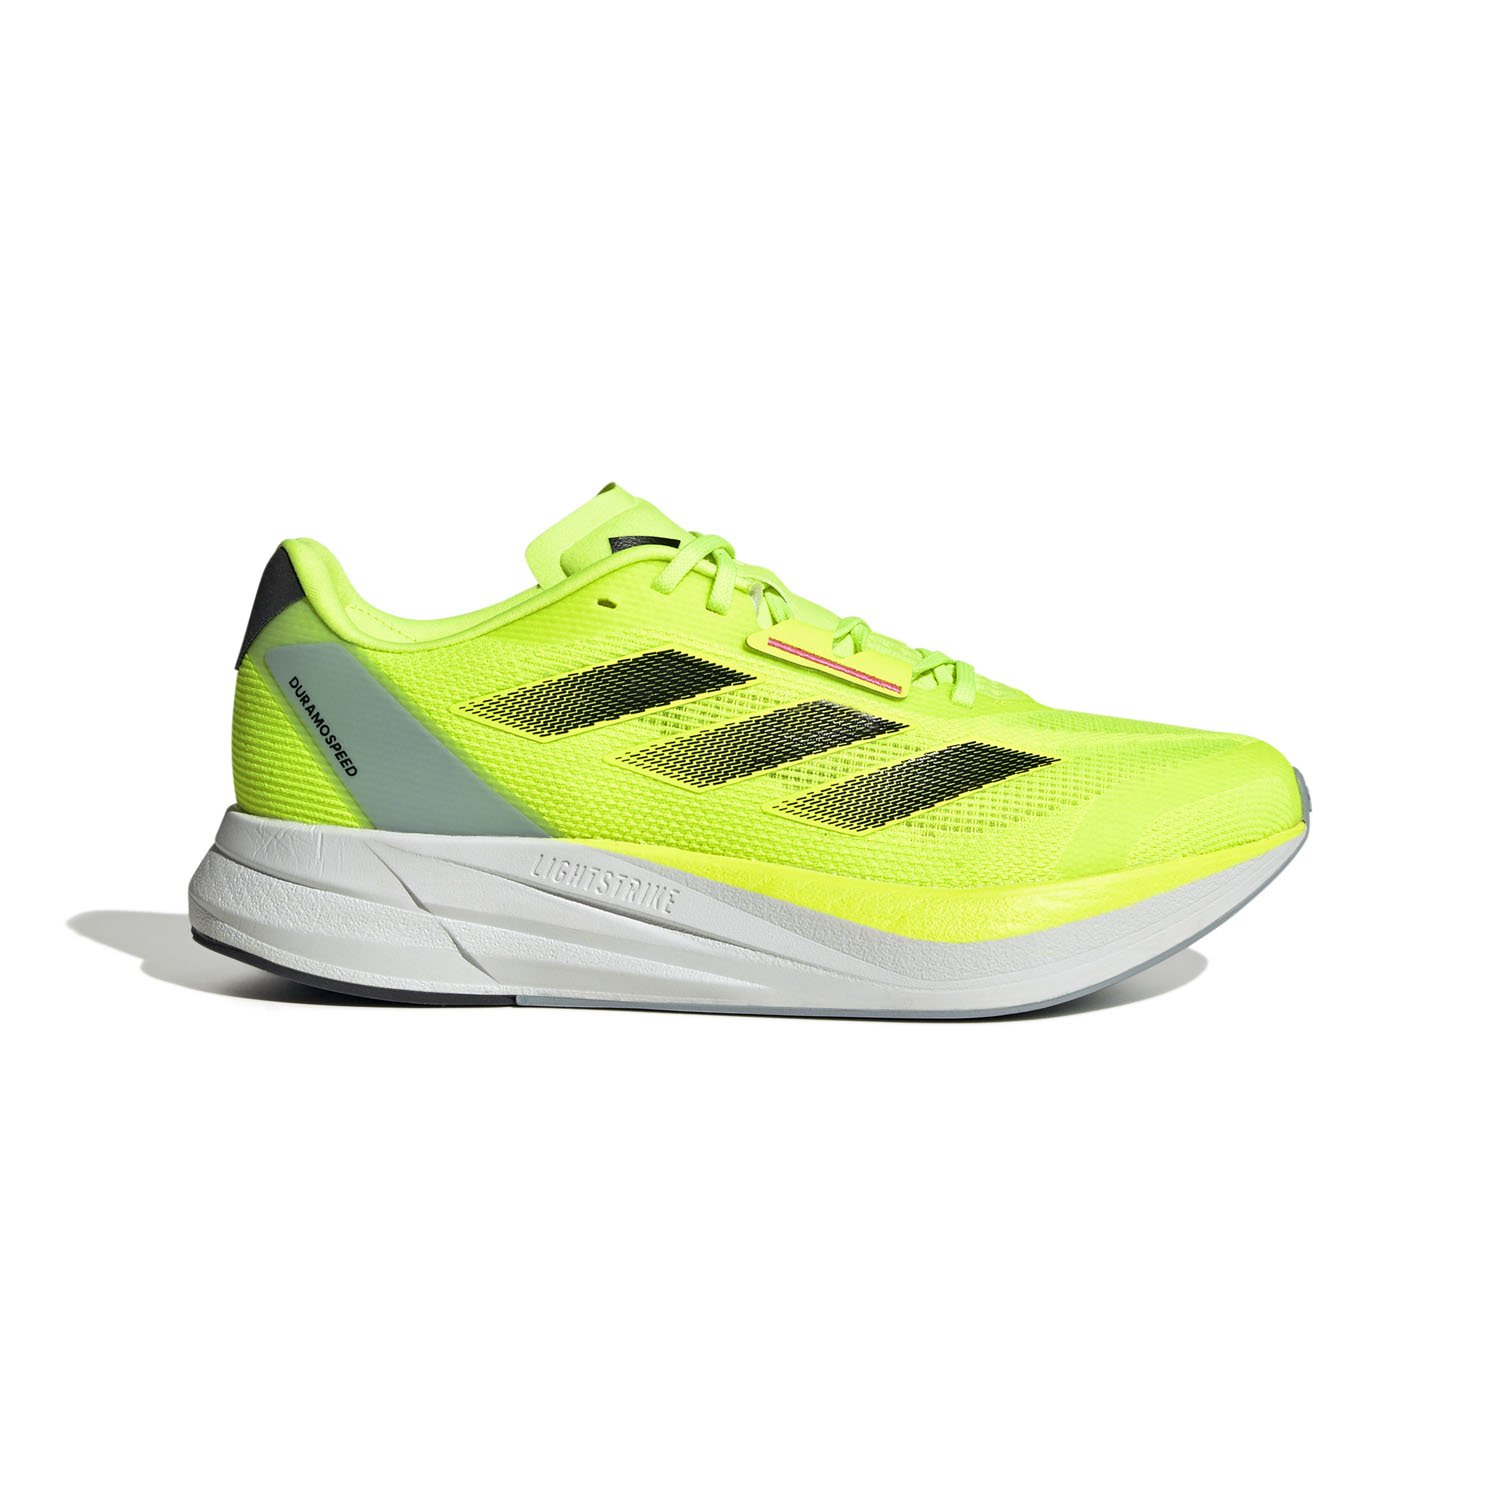 Adidas Duyramo Speed Erkek Yol Koşu Ayakkabısı - Sarı - 1